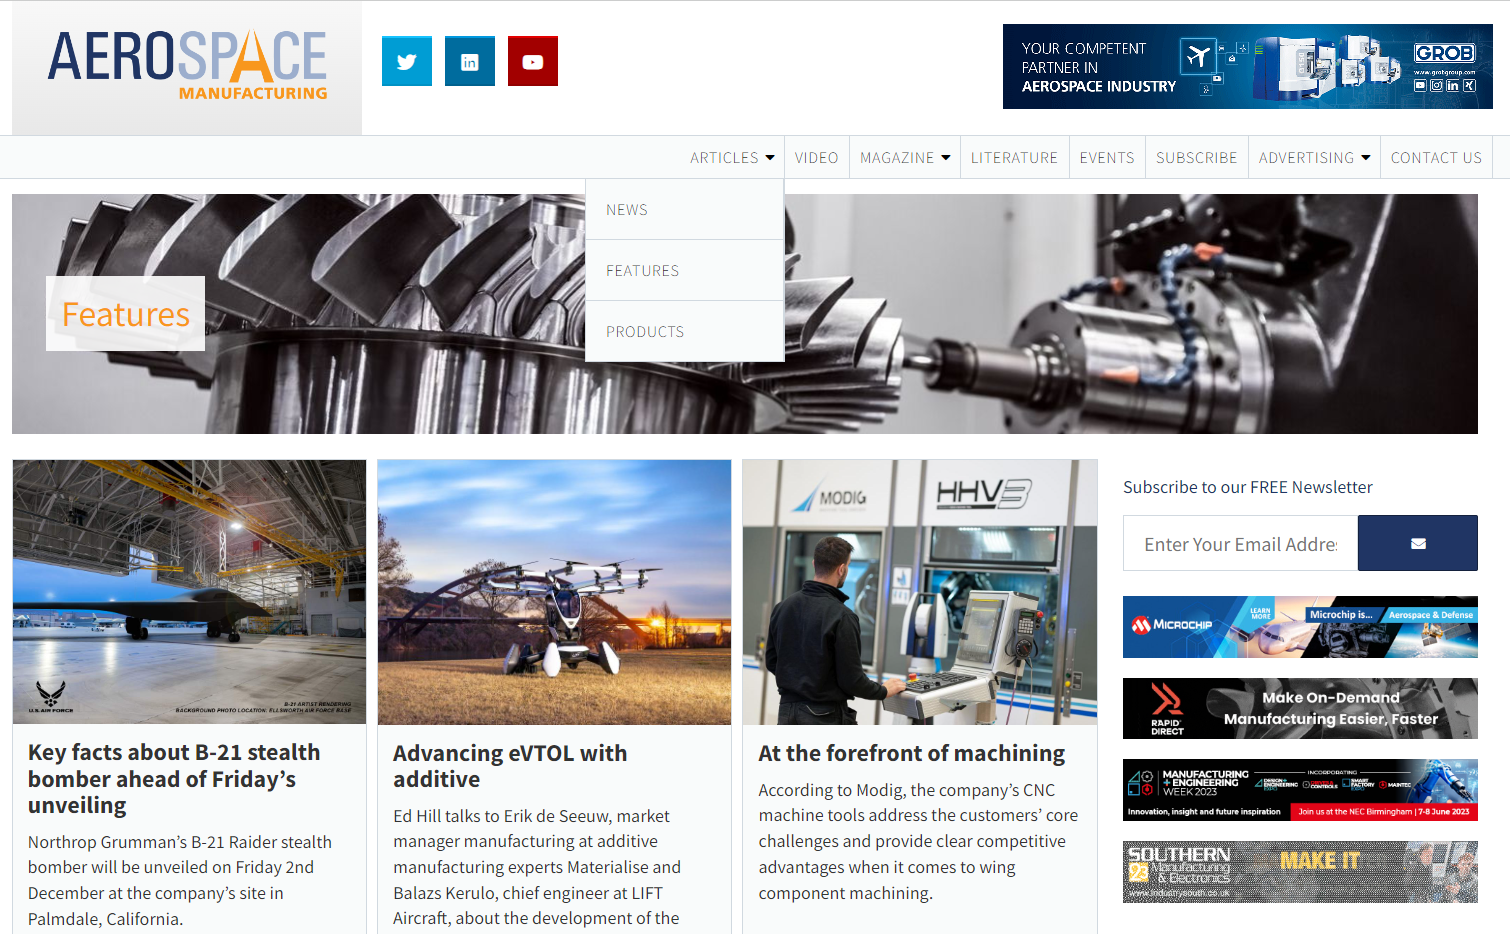 Blog Aerospace Manufacturing zawiera artykuły na temat nowości, funkcji i produktów z branży